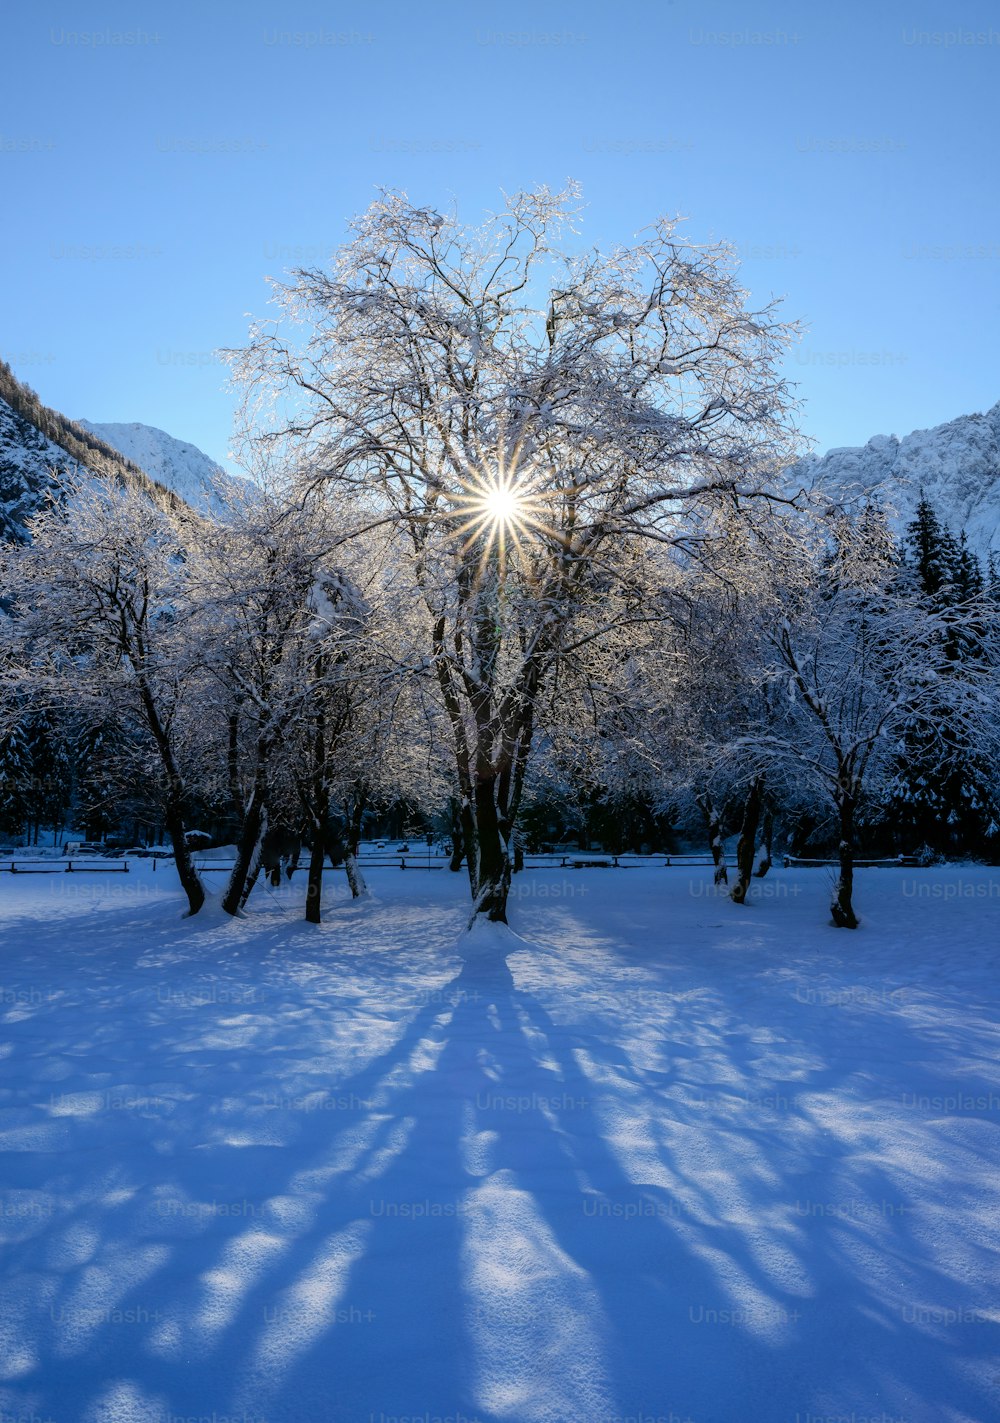 El sol brilla intensamente a través de los árboles en la nieve